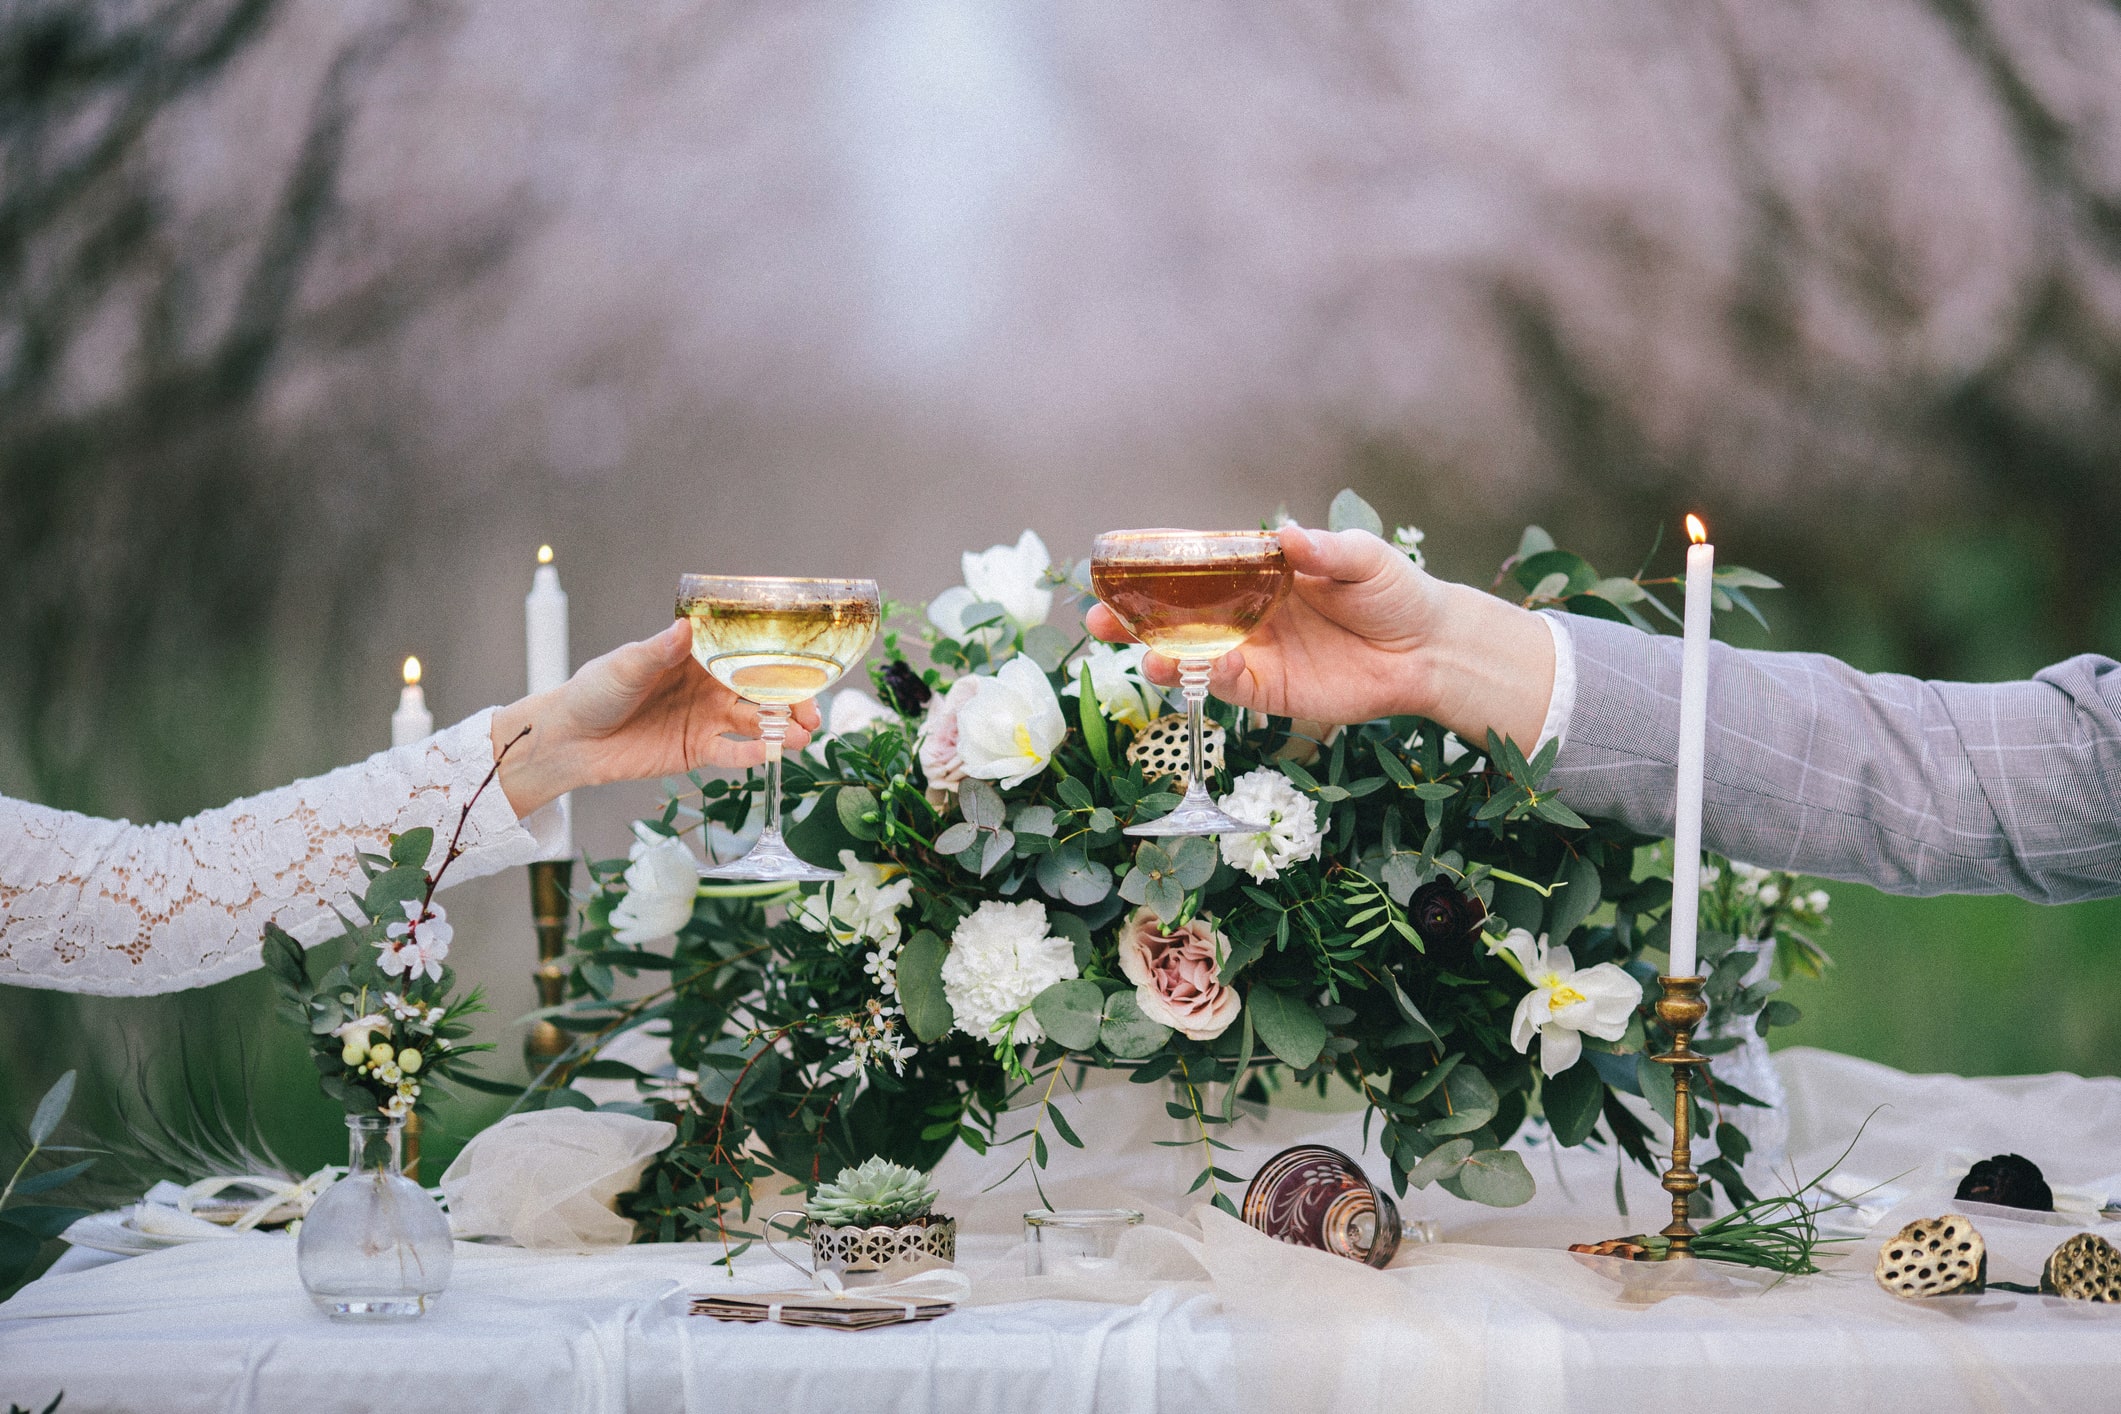 Top 7 Wedding Décor Trends of 2019